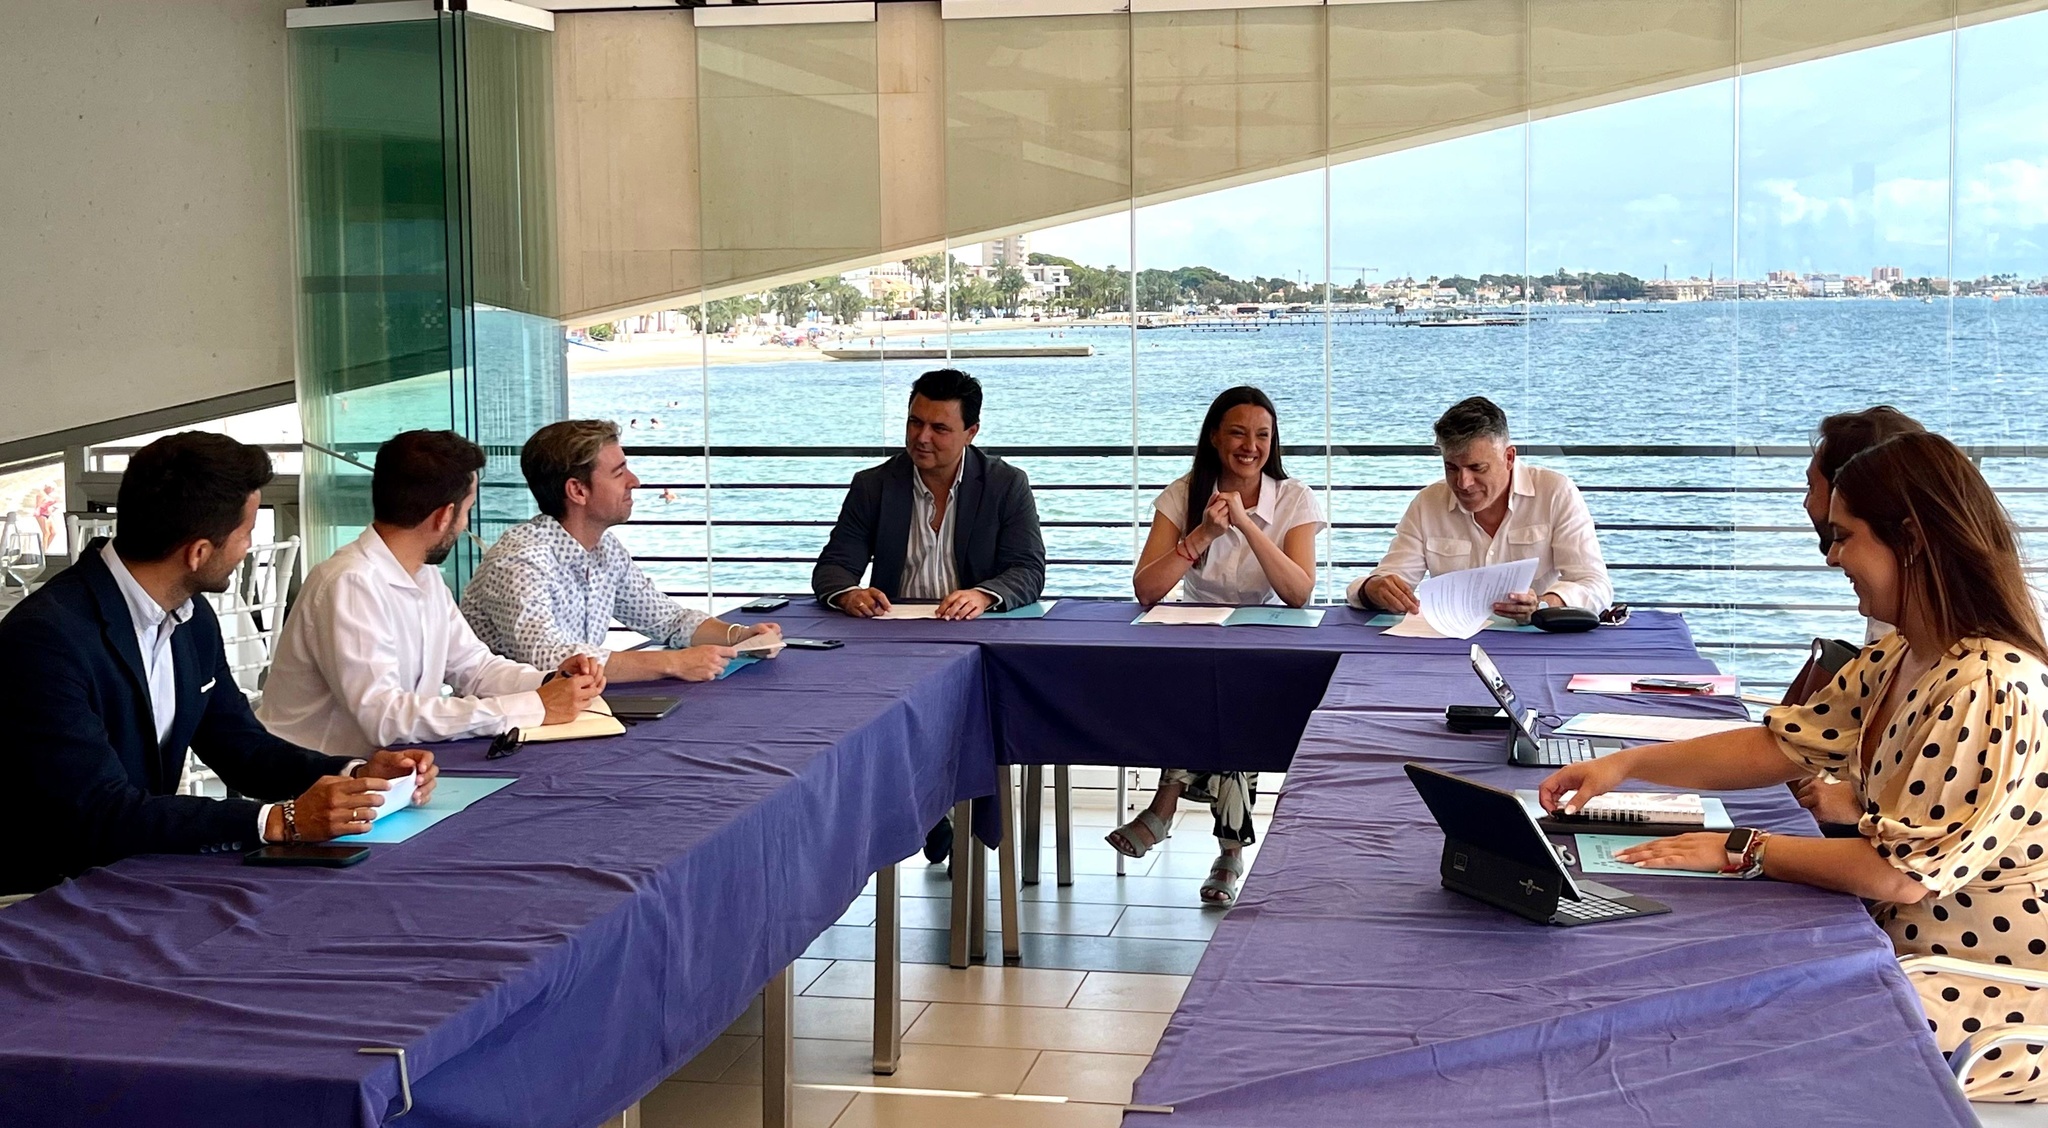 La consejería de Turismo, Cultura, Juventud y Deporte celebra su Consejo de Dirección con vistas al Mar Menor, en Santiago de la Ribera